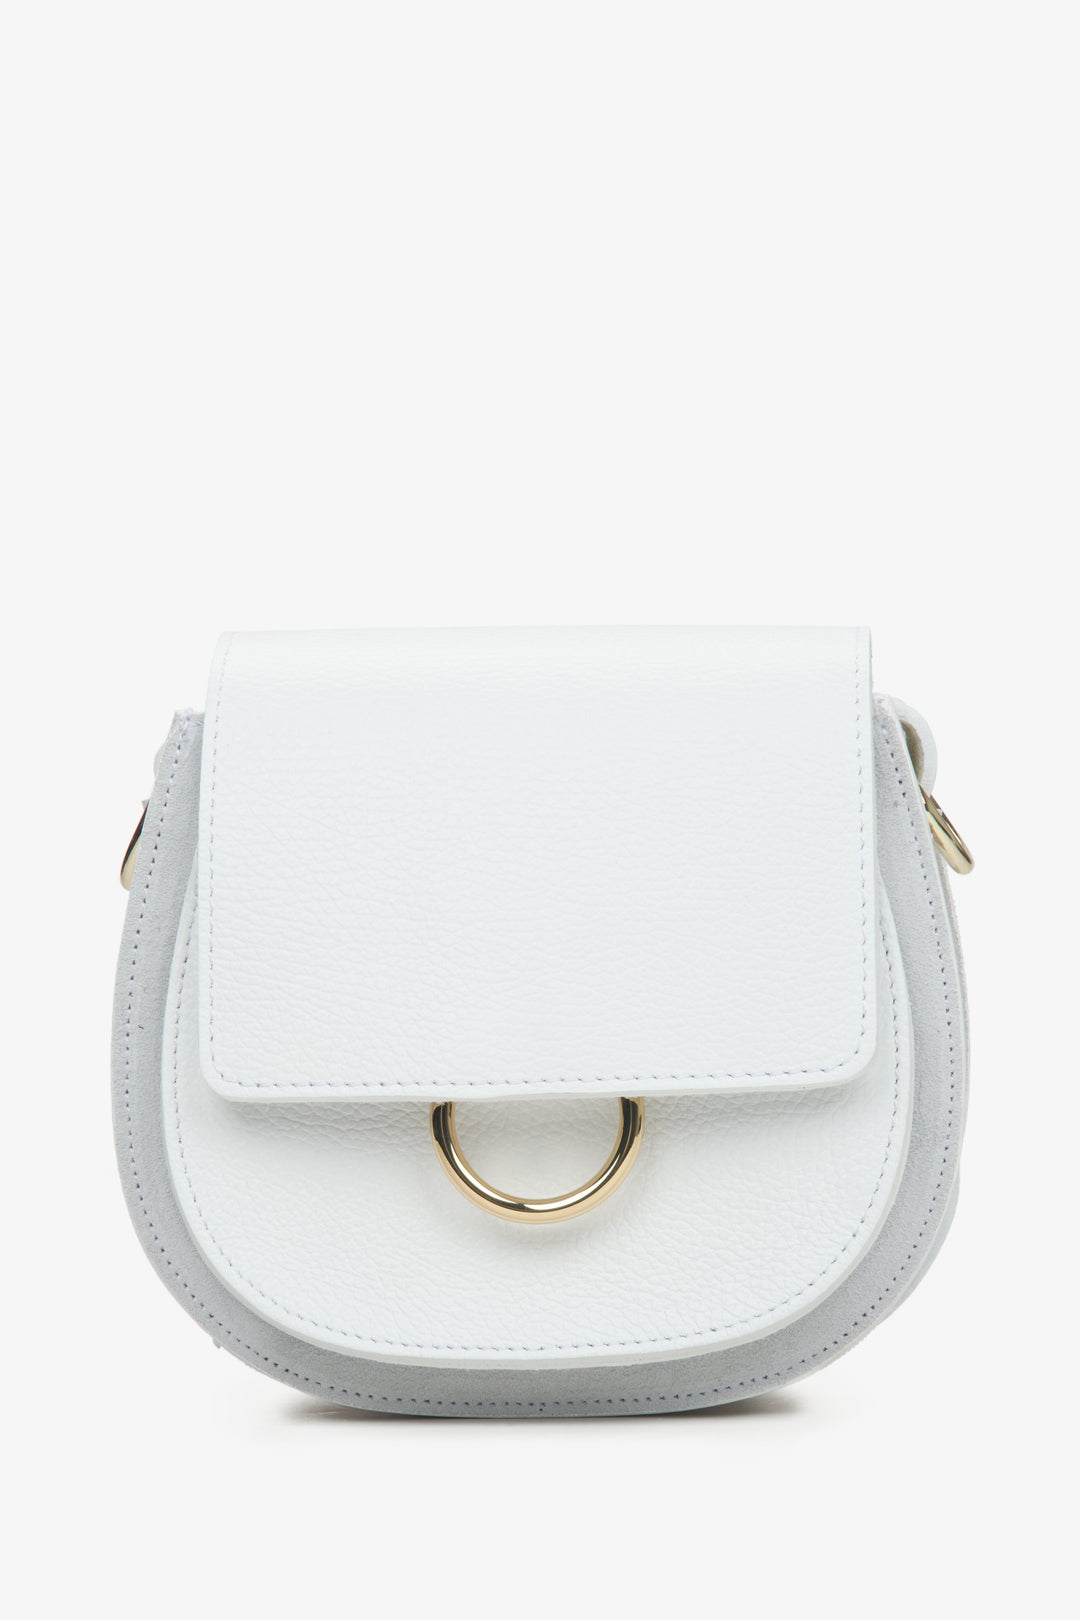 Mała biała torebka damska w kształcie podkowy z włoskiej skóry naturalnej Premium ER00115063